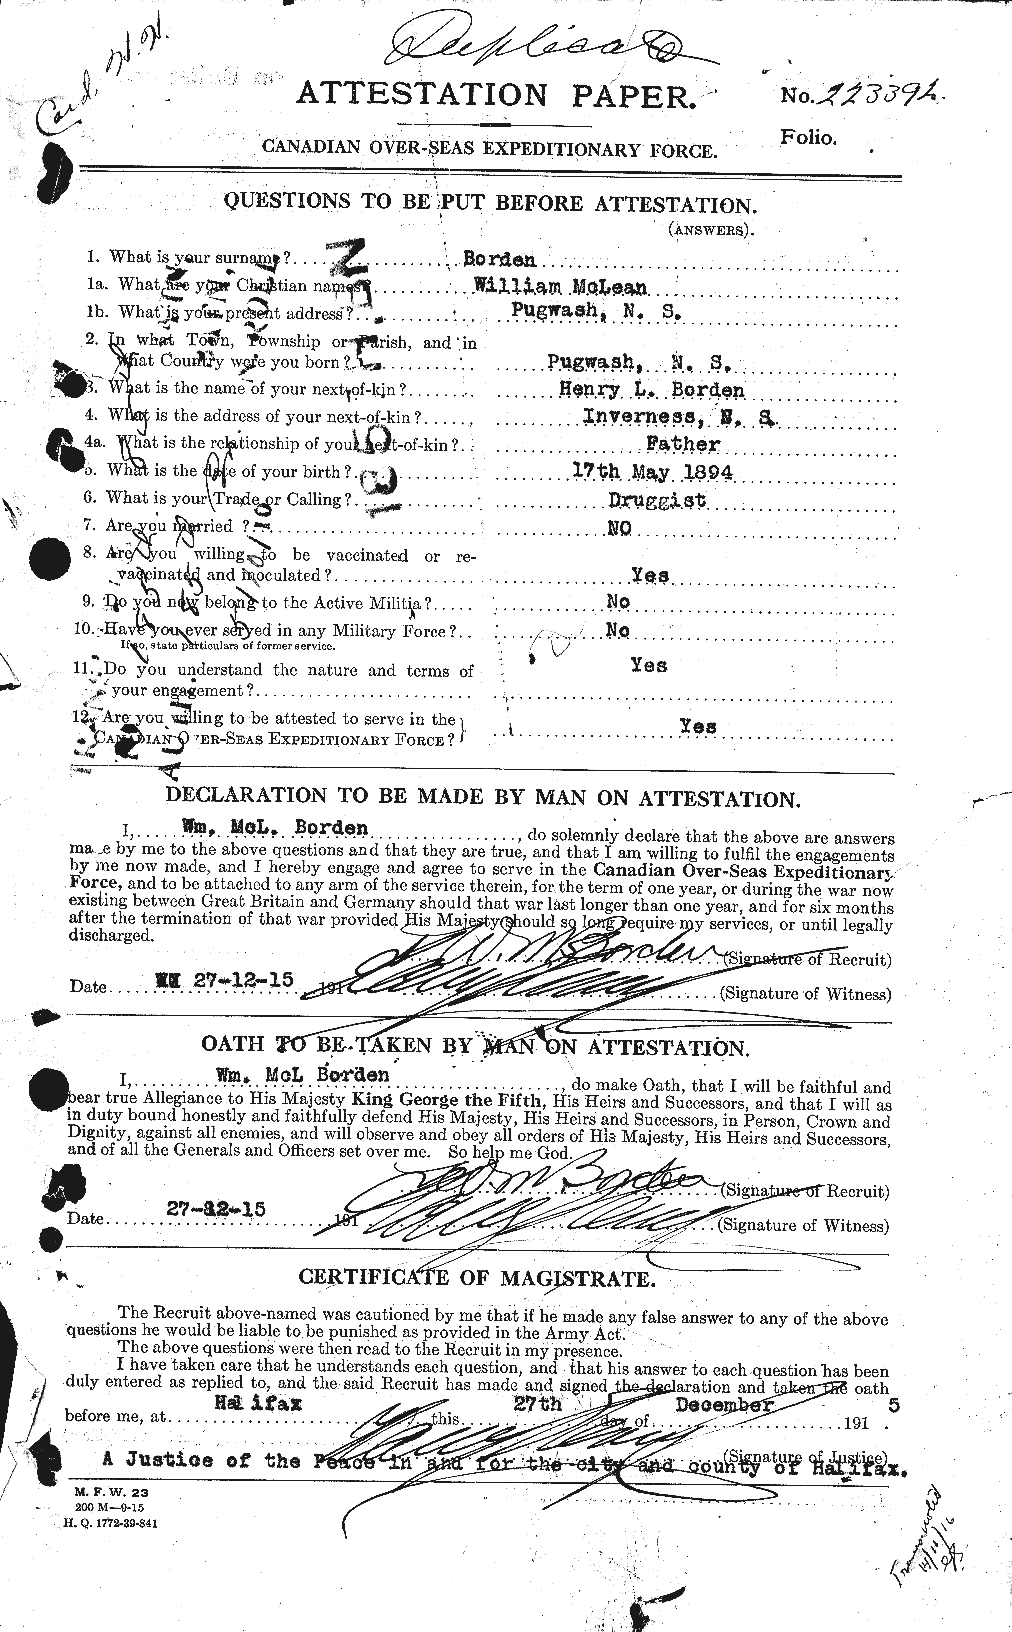 Dossiers du Personnel de la Première Guerre mondiale - CEC 252325a